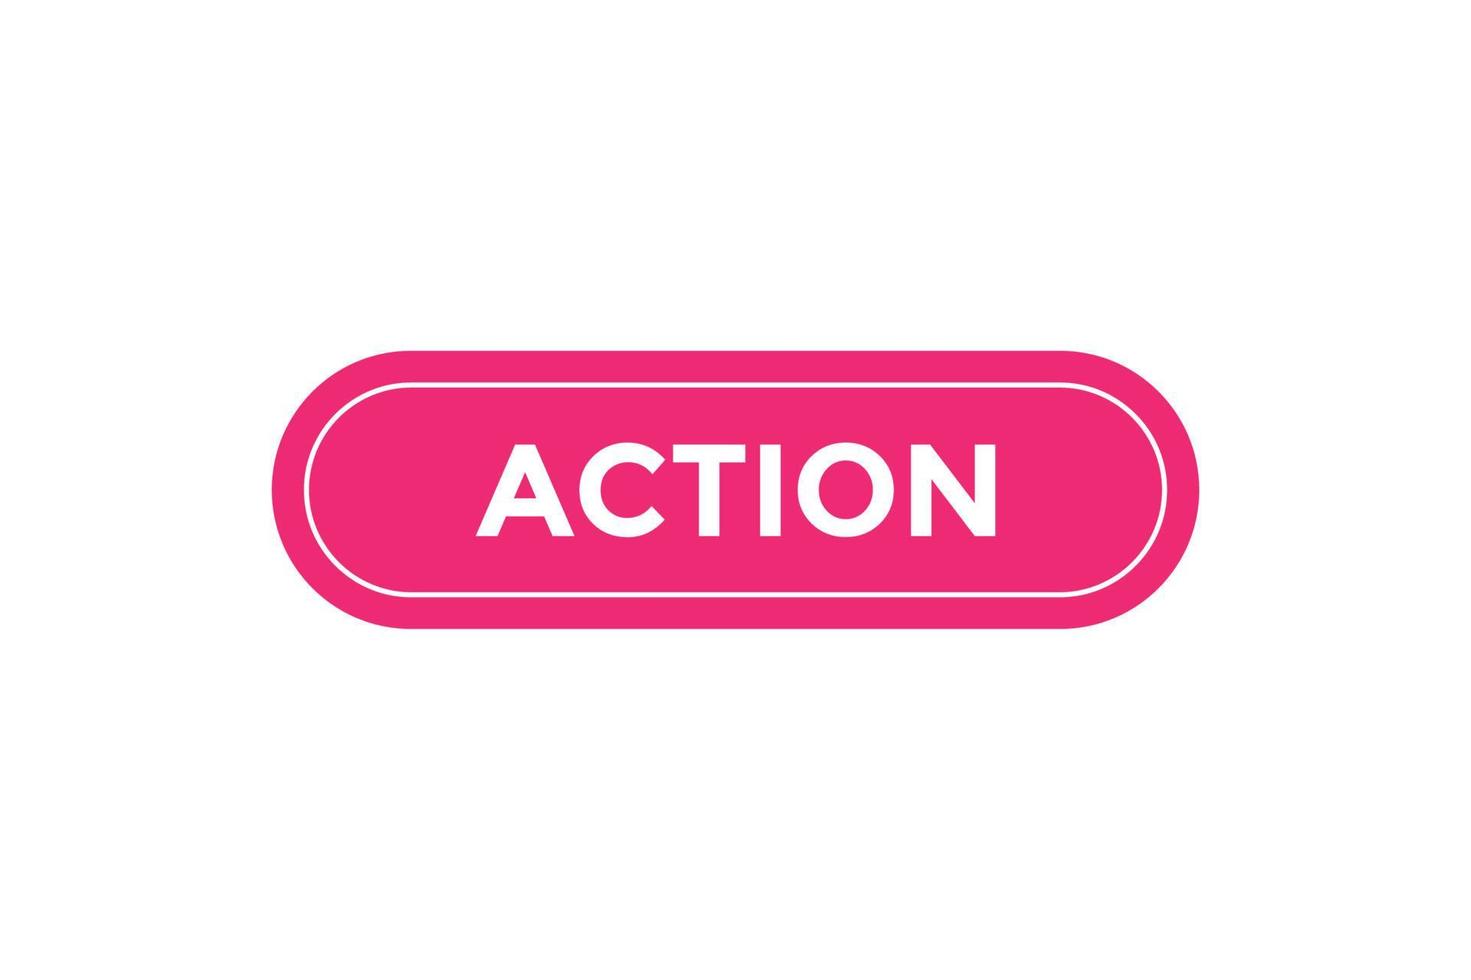 plantillas de banner web de botón de acción. ilustración vectorial vector